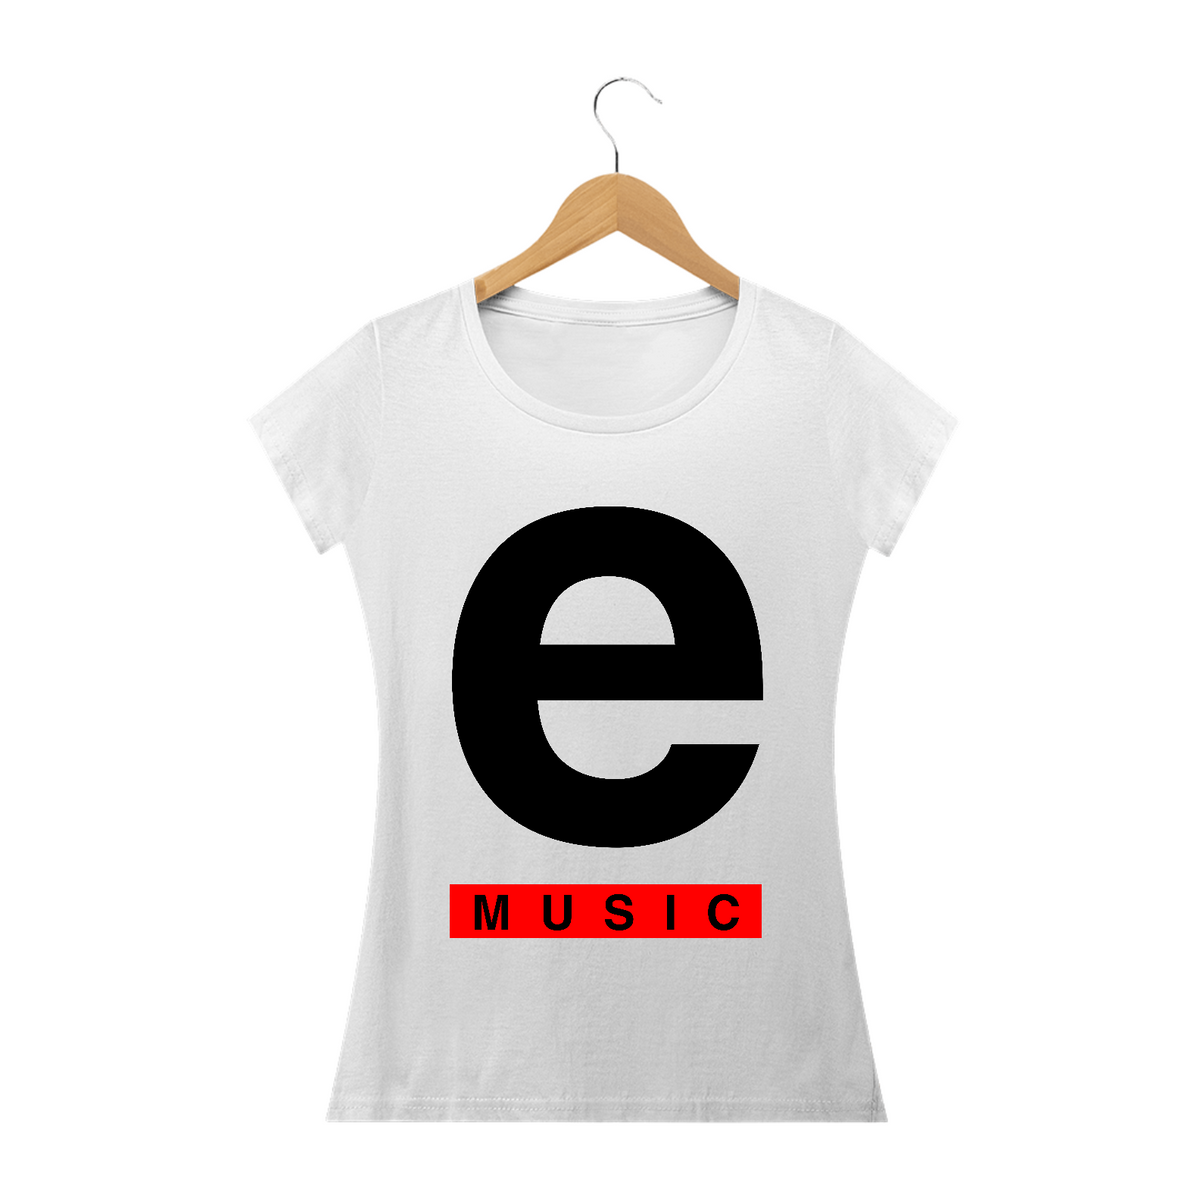 Nome do produto: E-MUSIC - baby long prime